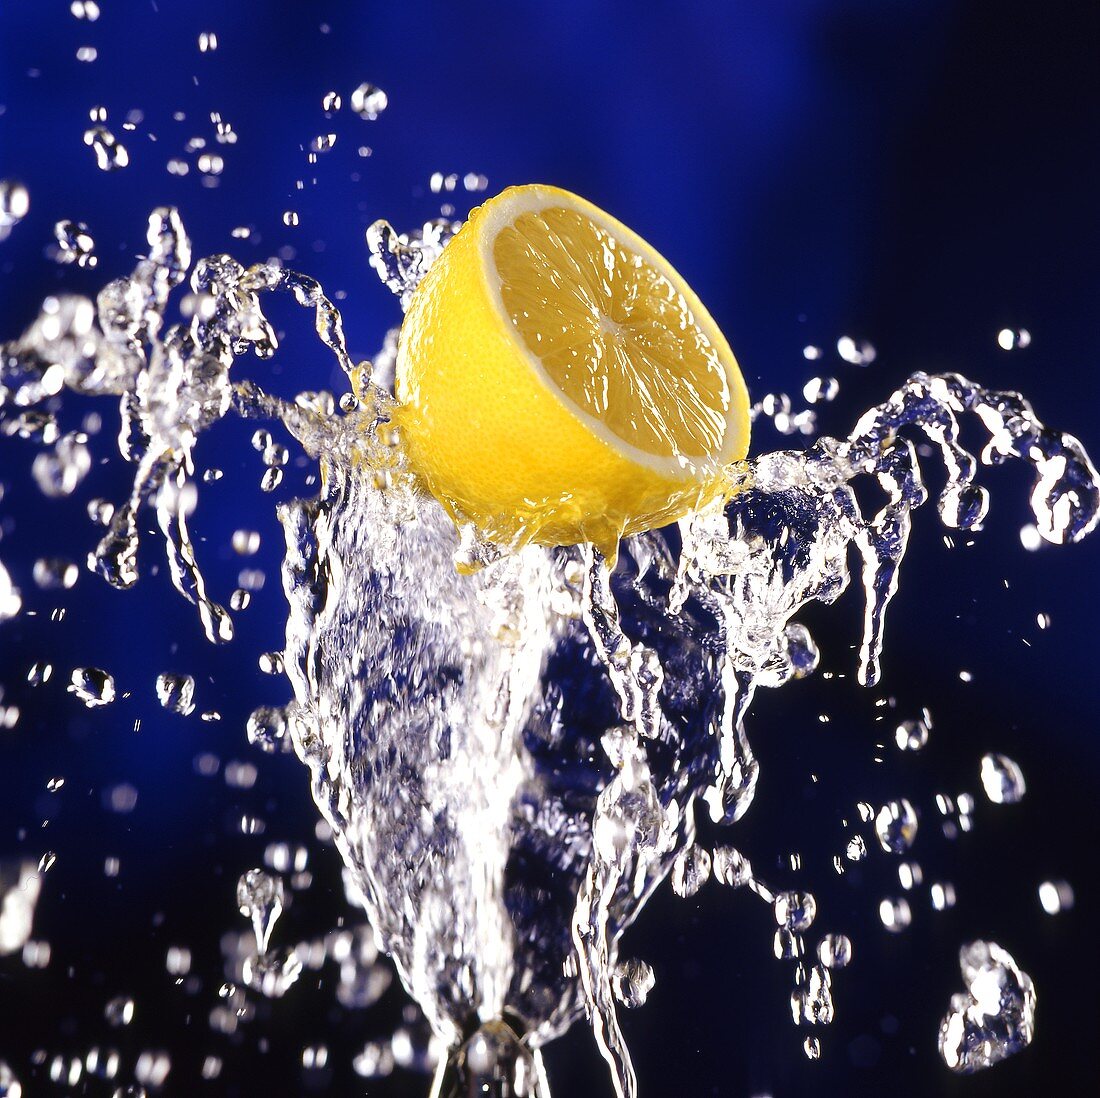 Half a lemon on splashing water